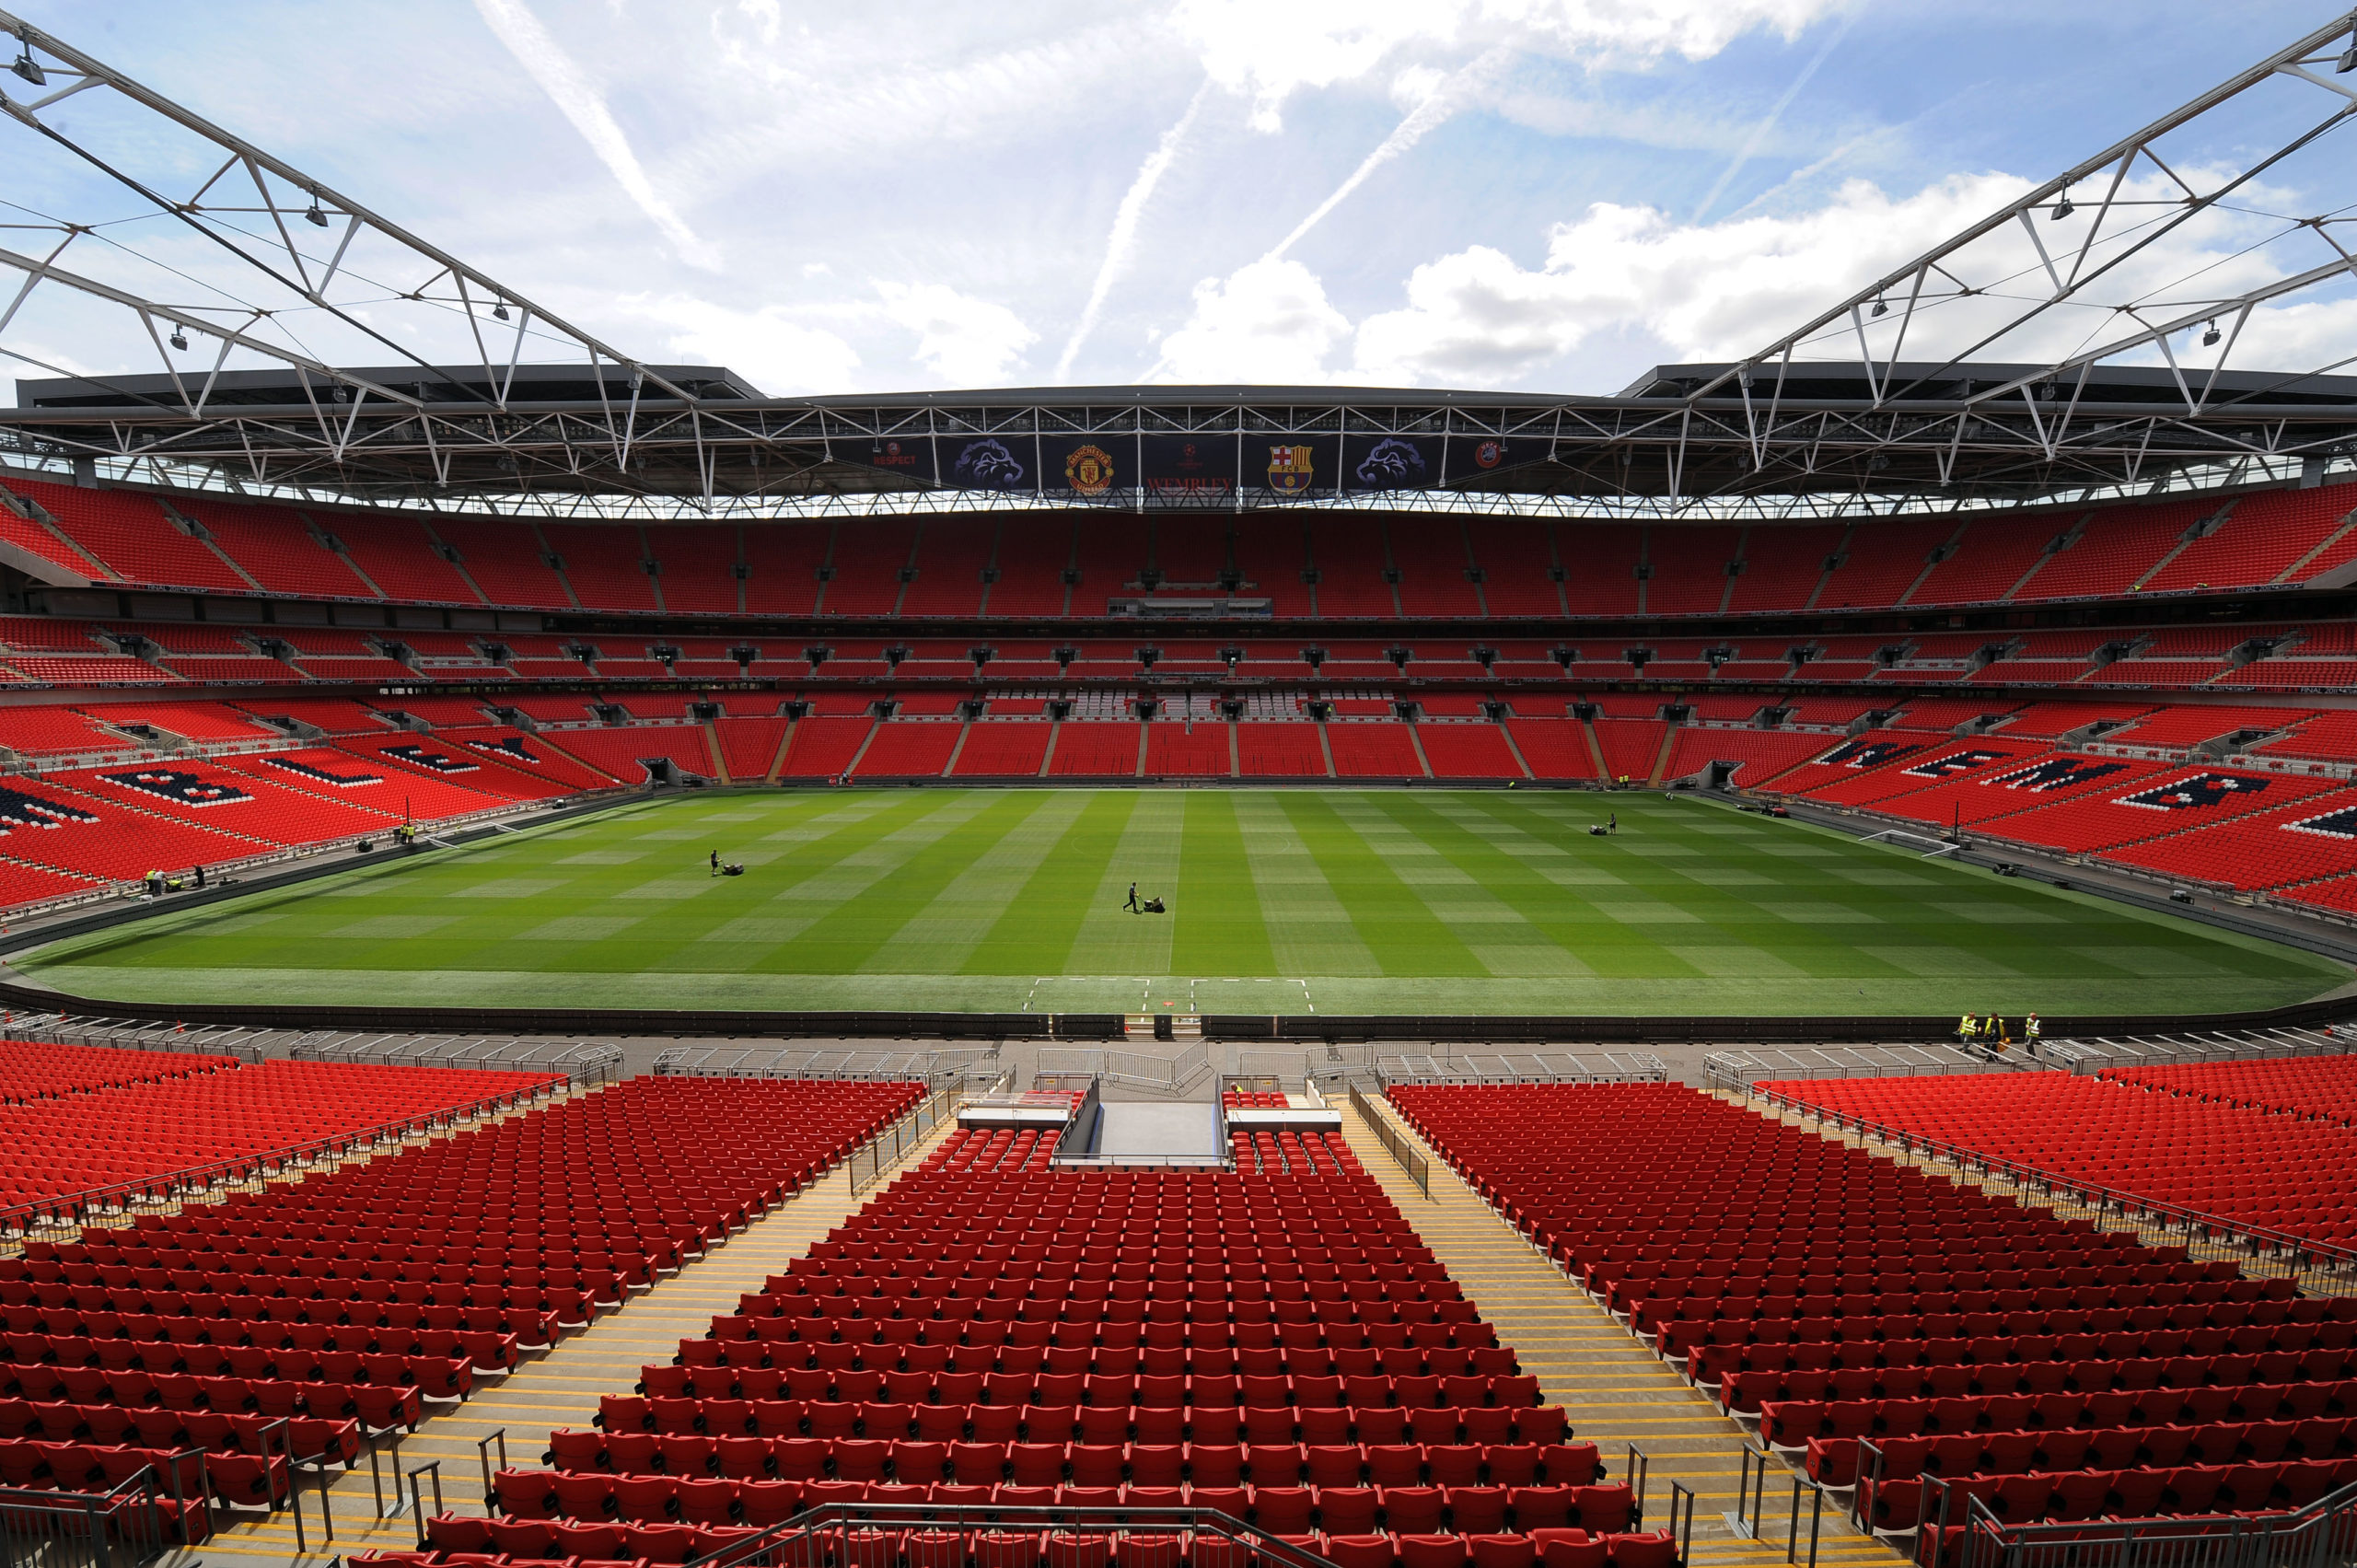 Wembley stadium will host fans next month